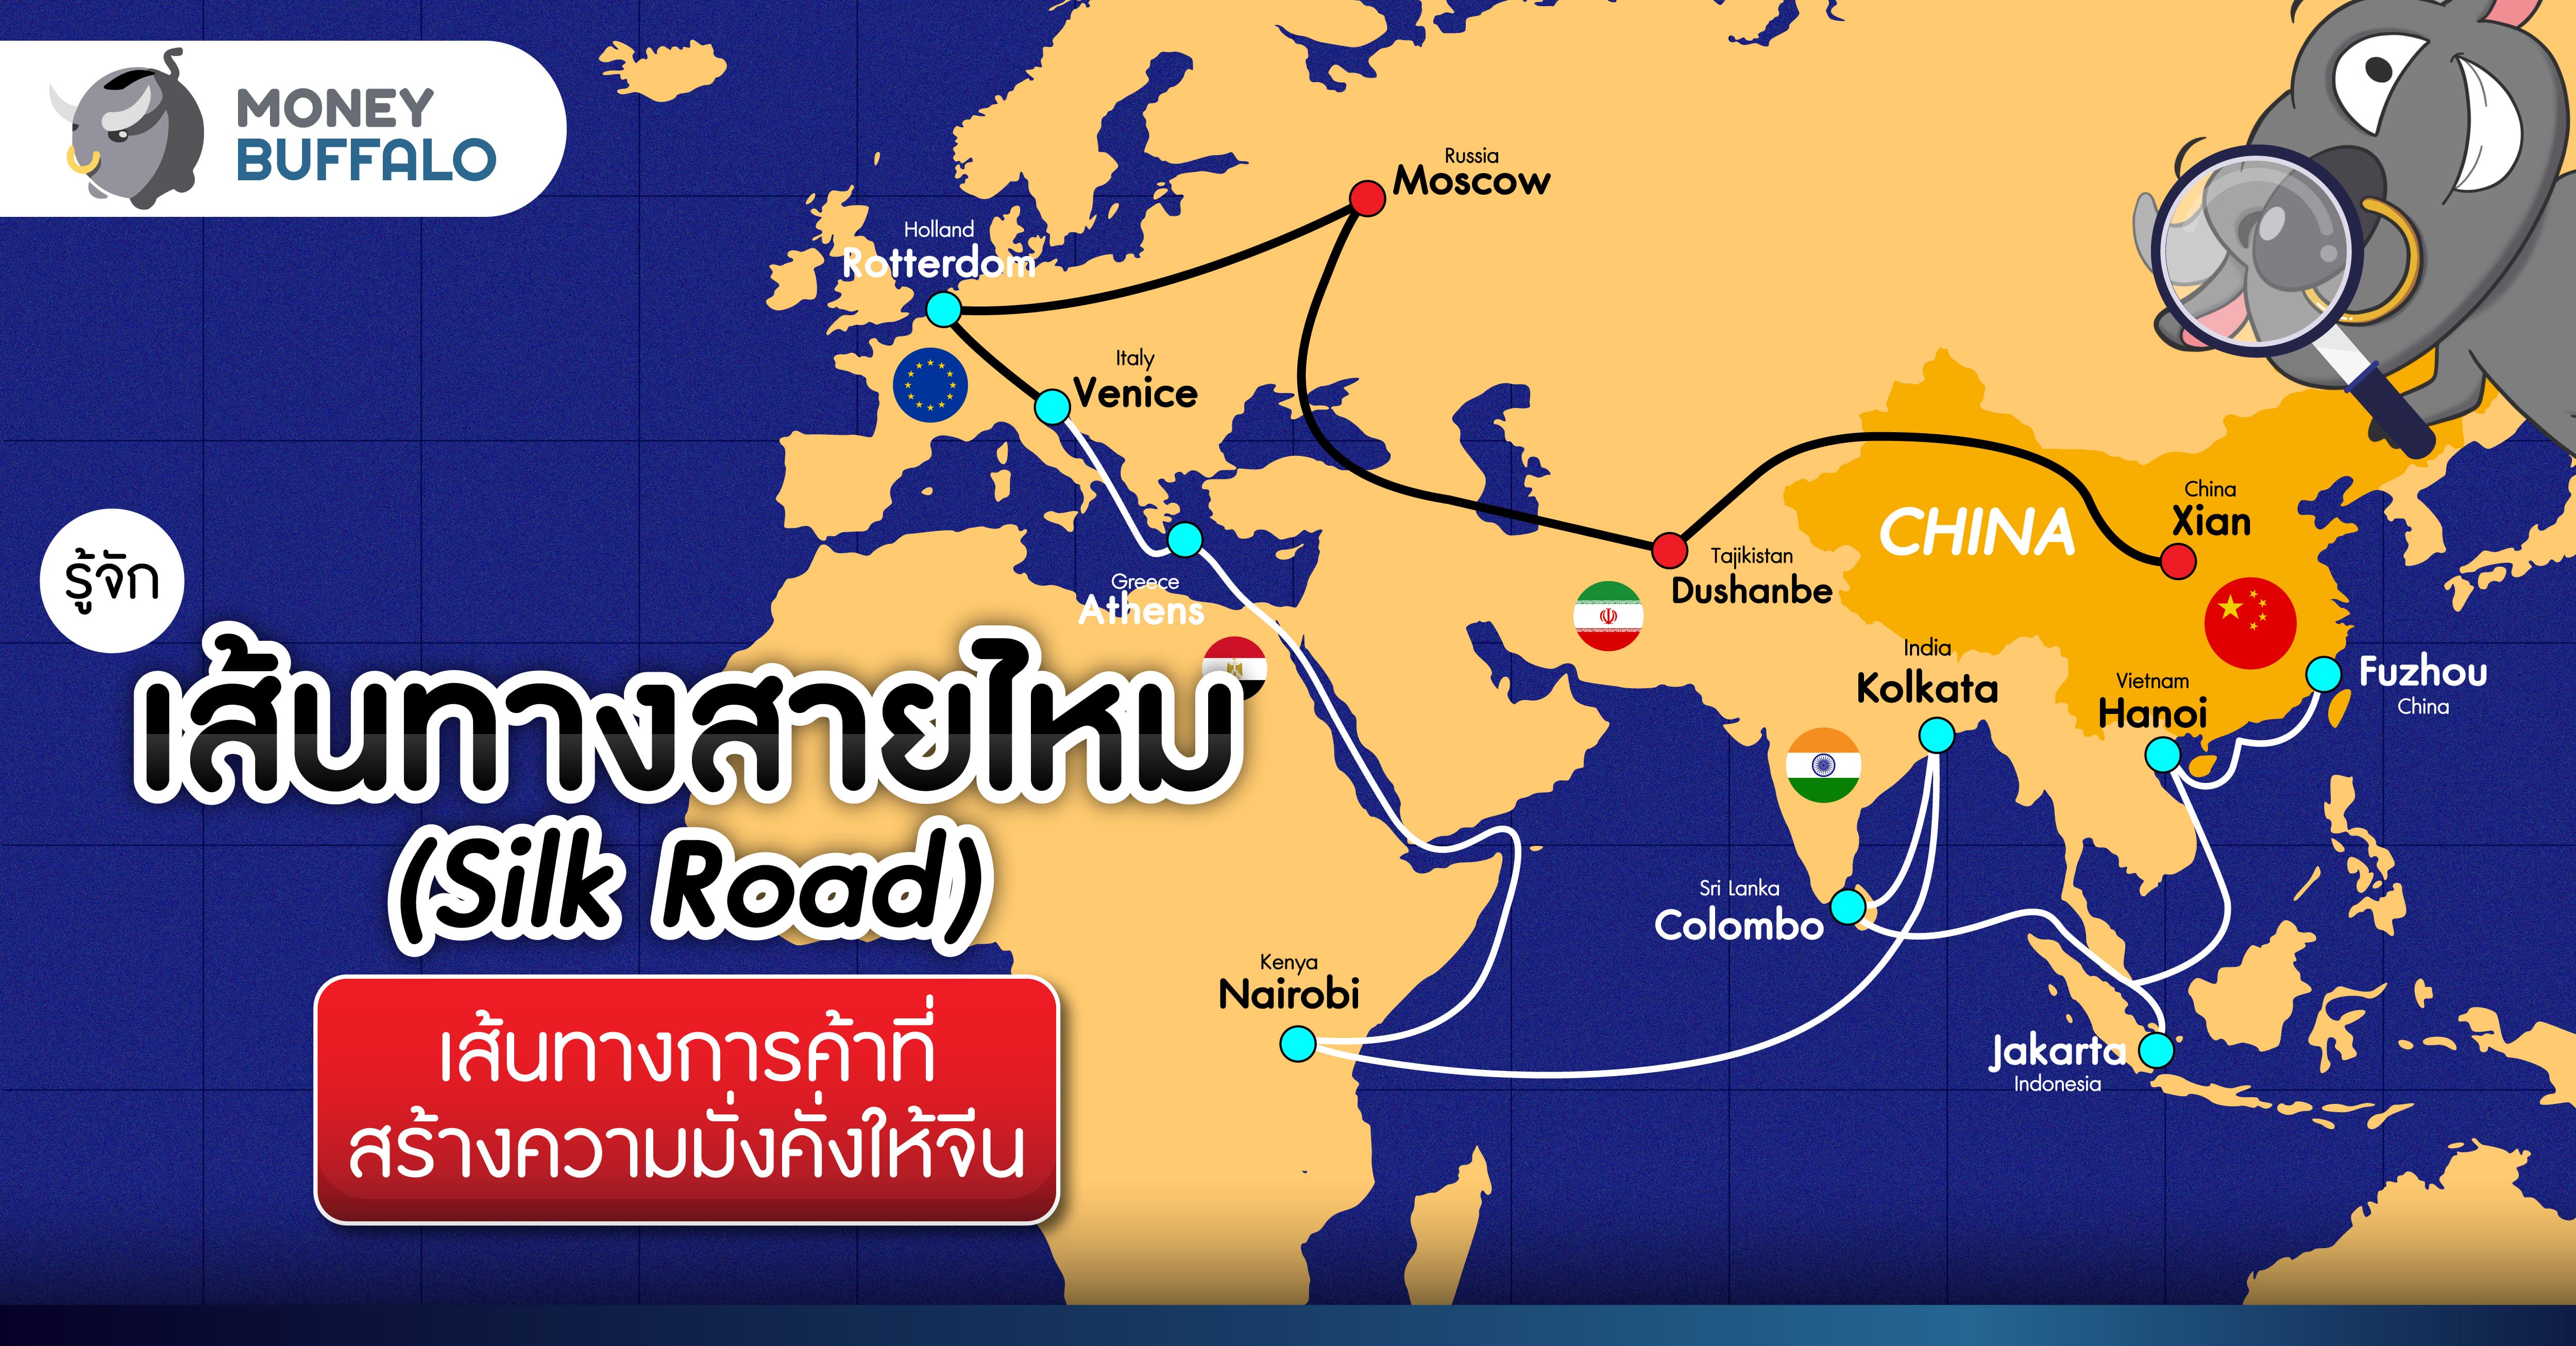 รู้จัก “เส้นทางสายไหม (Silk Road)” เส้นทางการค้าที่สร้างความมั่งคั่งให้จีน